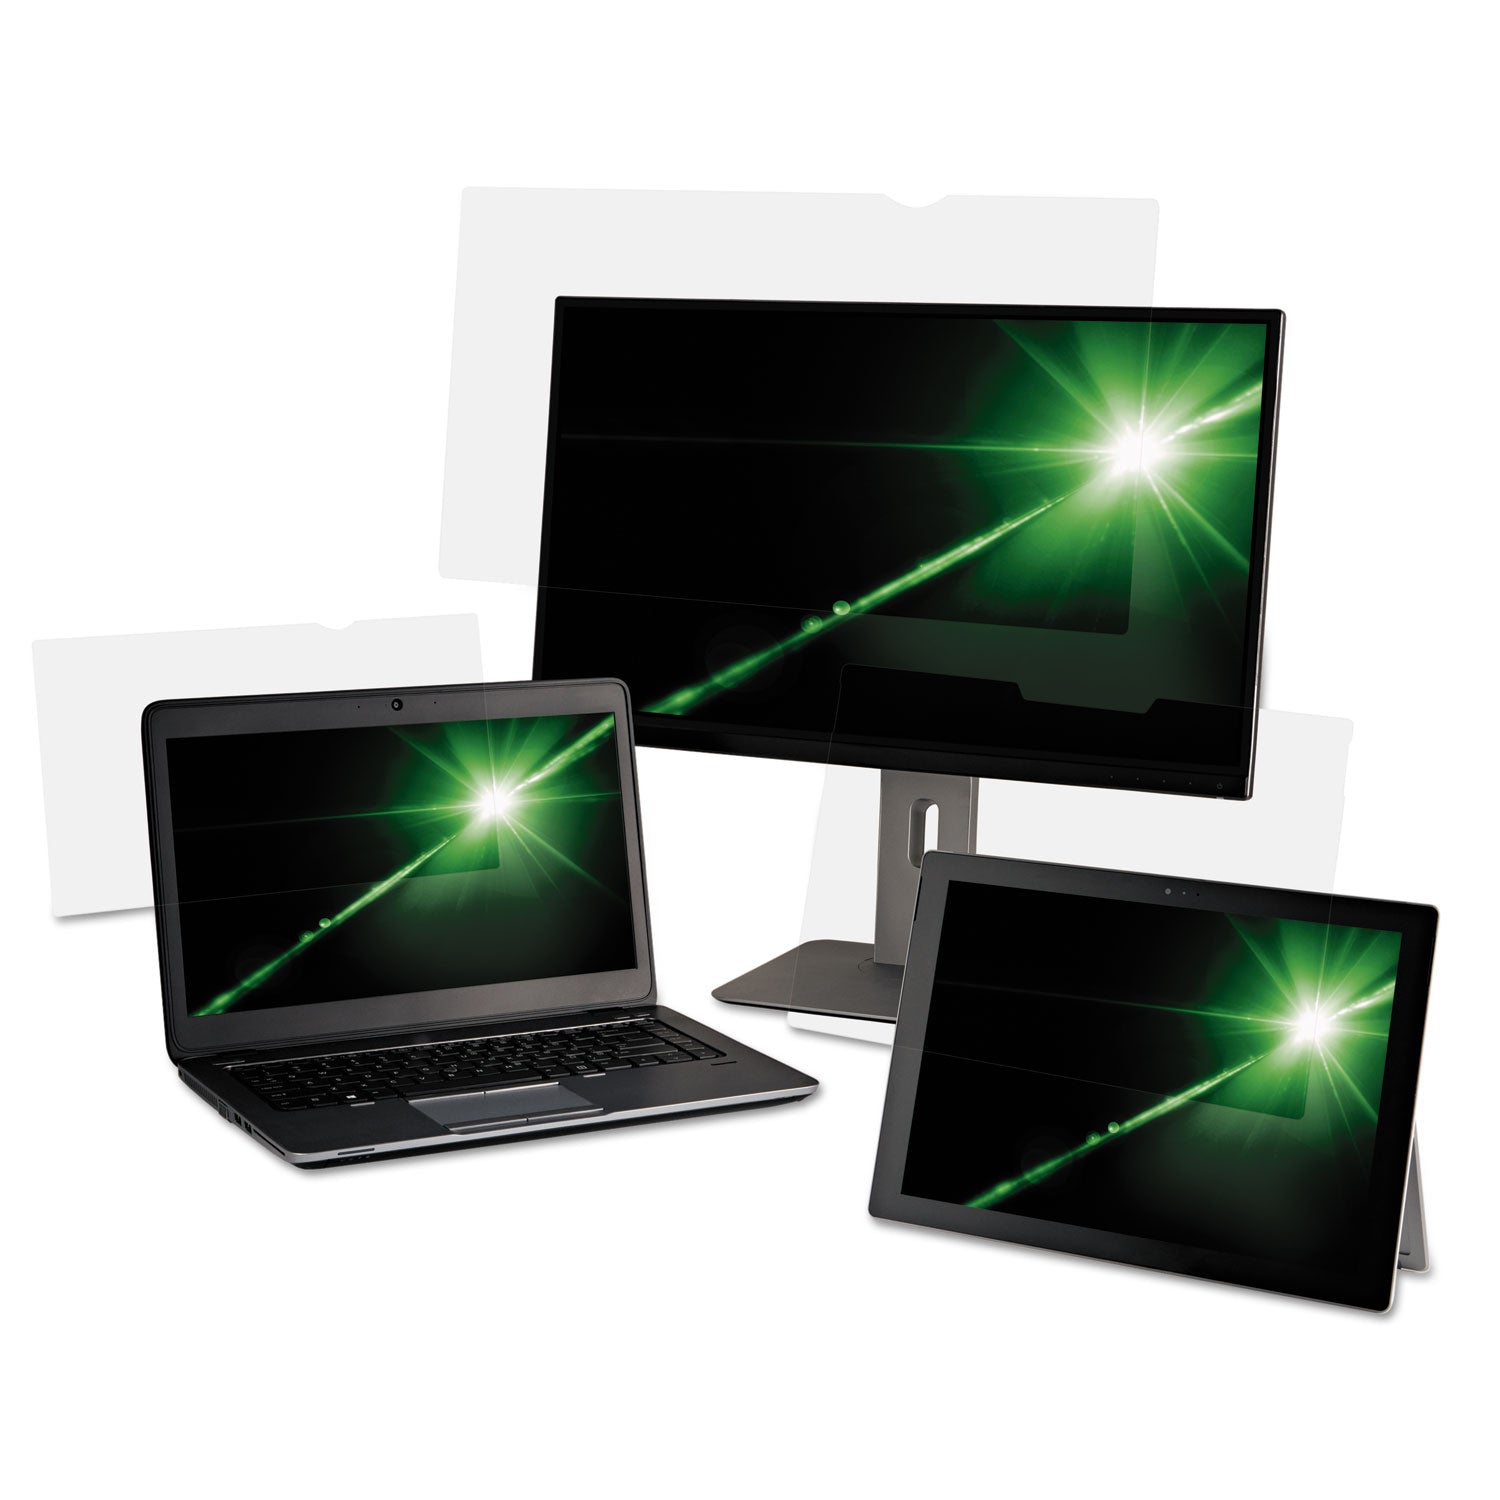 Antiglare Frameless Filter for 15.6" Widescreen Laptop, 16:9 Aspect Ratio - 